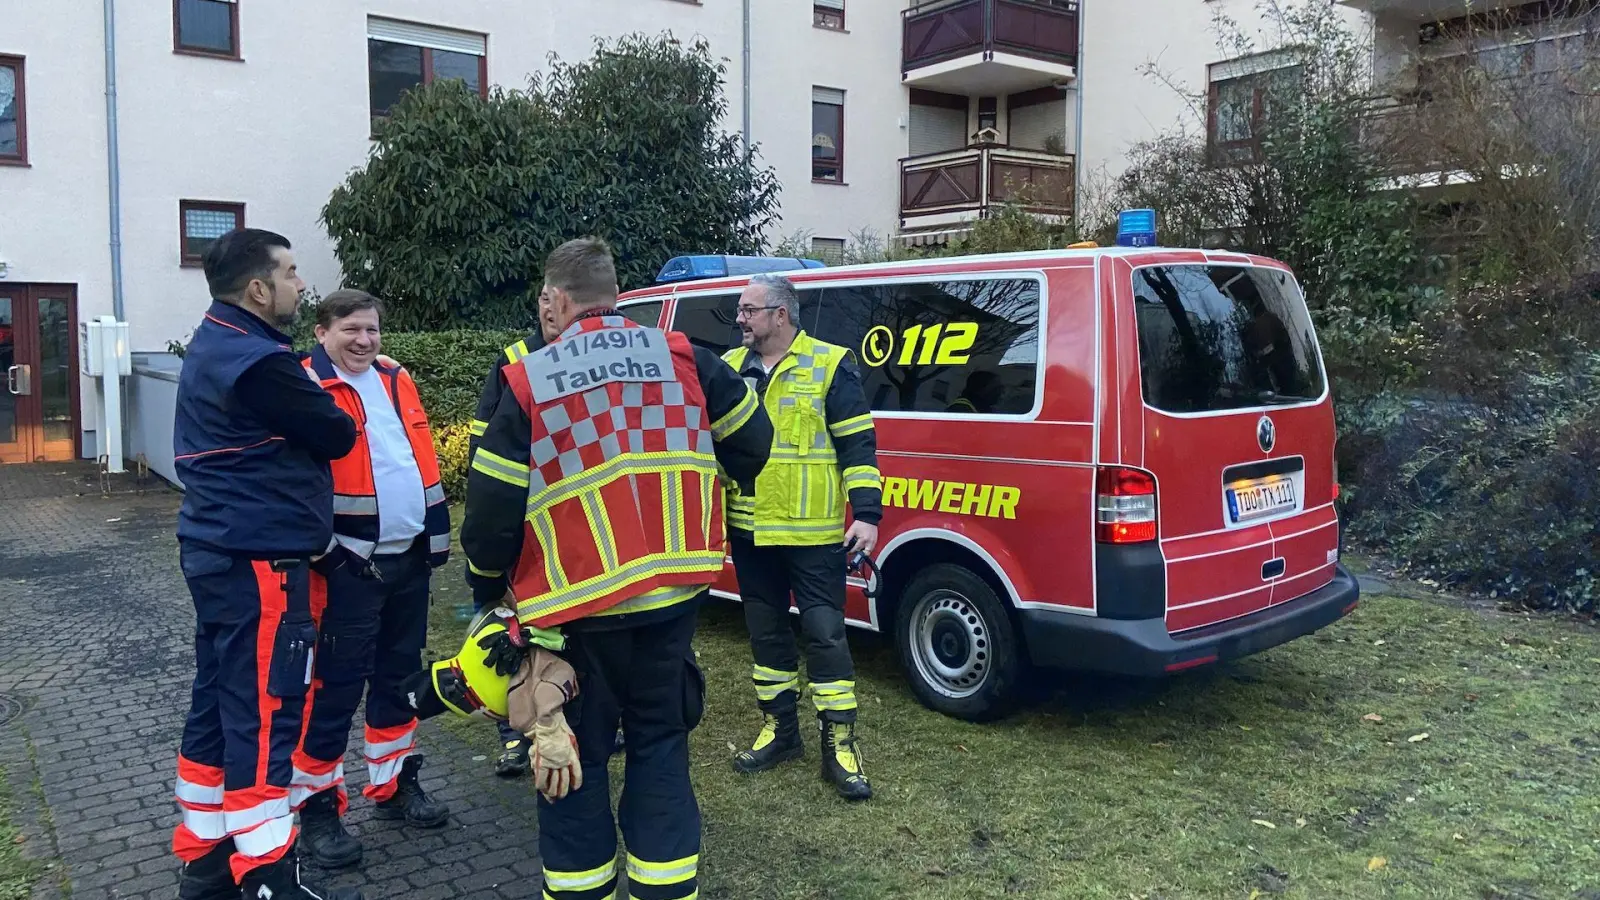 Fehlalarm: Angebrannte Brötchen rufen Feuerwehr auf den Plan (Foto: taucha-kompakt.de)